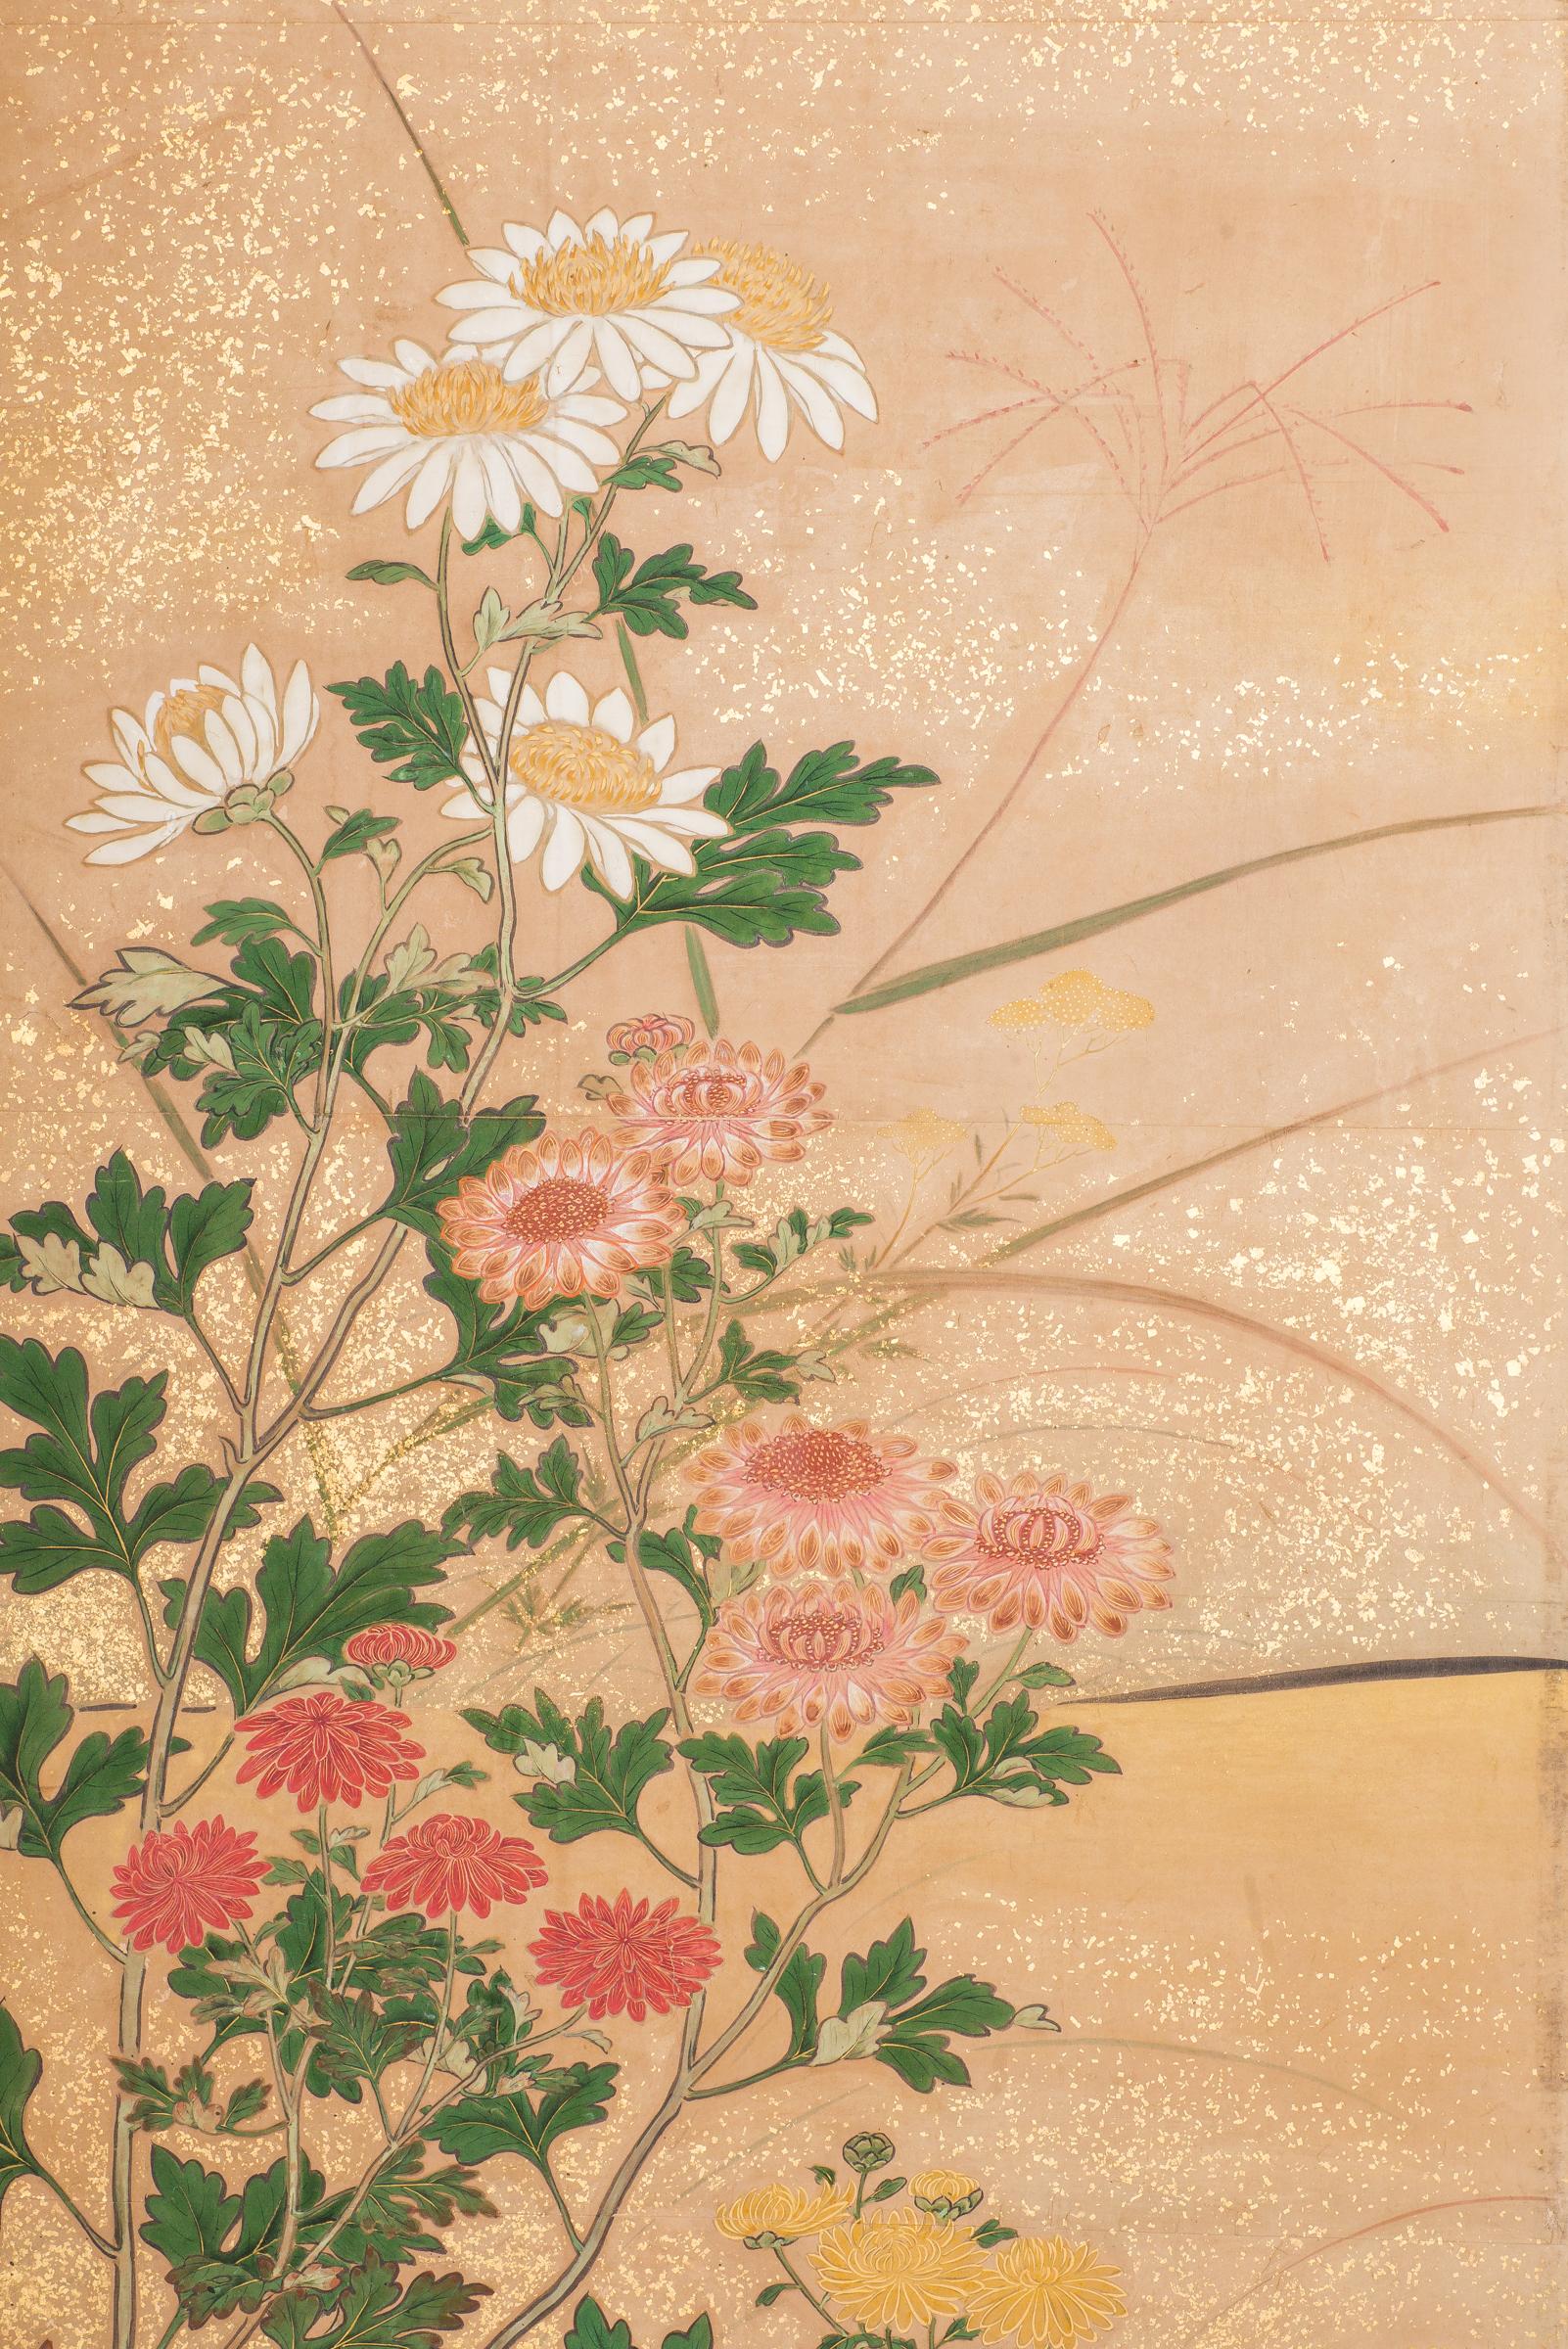 Paravent japonais à six panneaux : Chrysanthèmes, peinture de la période Edo (vers 1800) représentant une variété de chrysanthèmes dans un paysage de jardin, avec des moineaux. Pigments minéraux sur papier avec poussière d'or et bordure de brocart